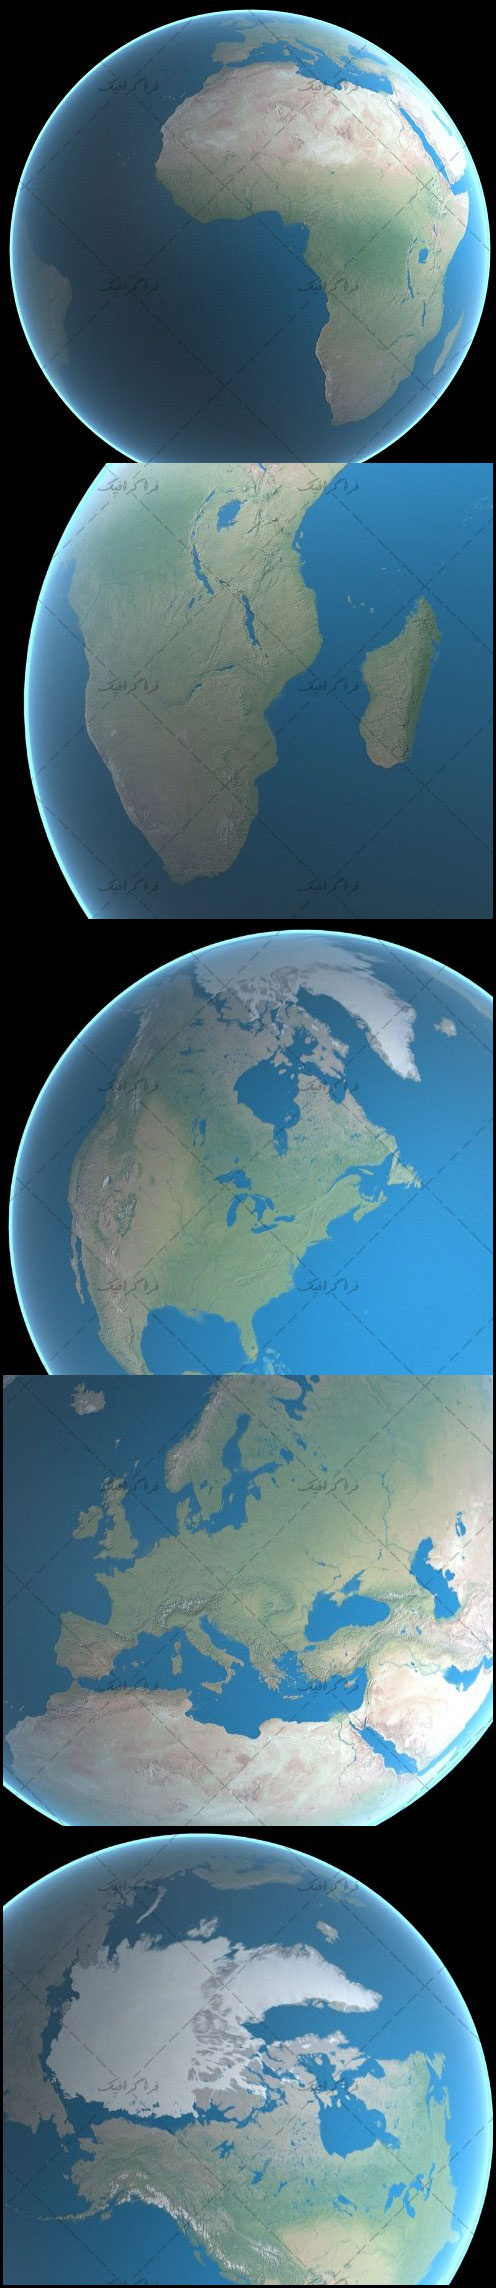 دانلود مدل سه بعدی کره زمین بدون ابر - کیفیت 16K